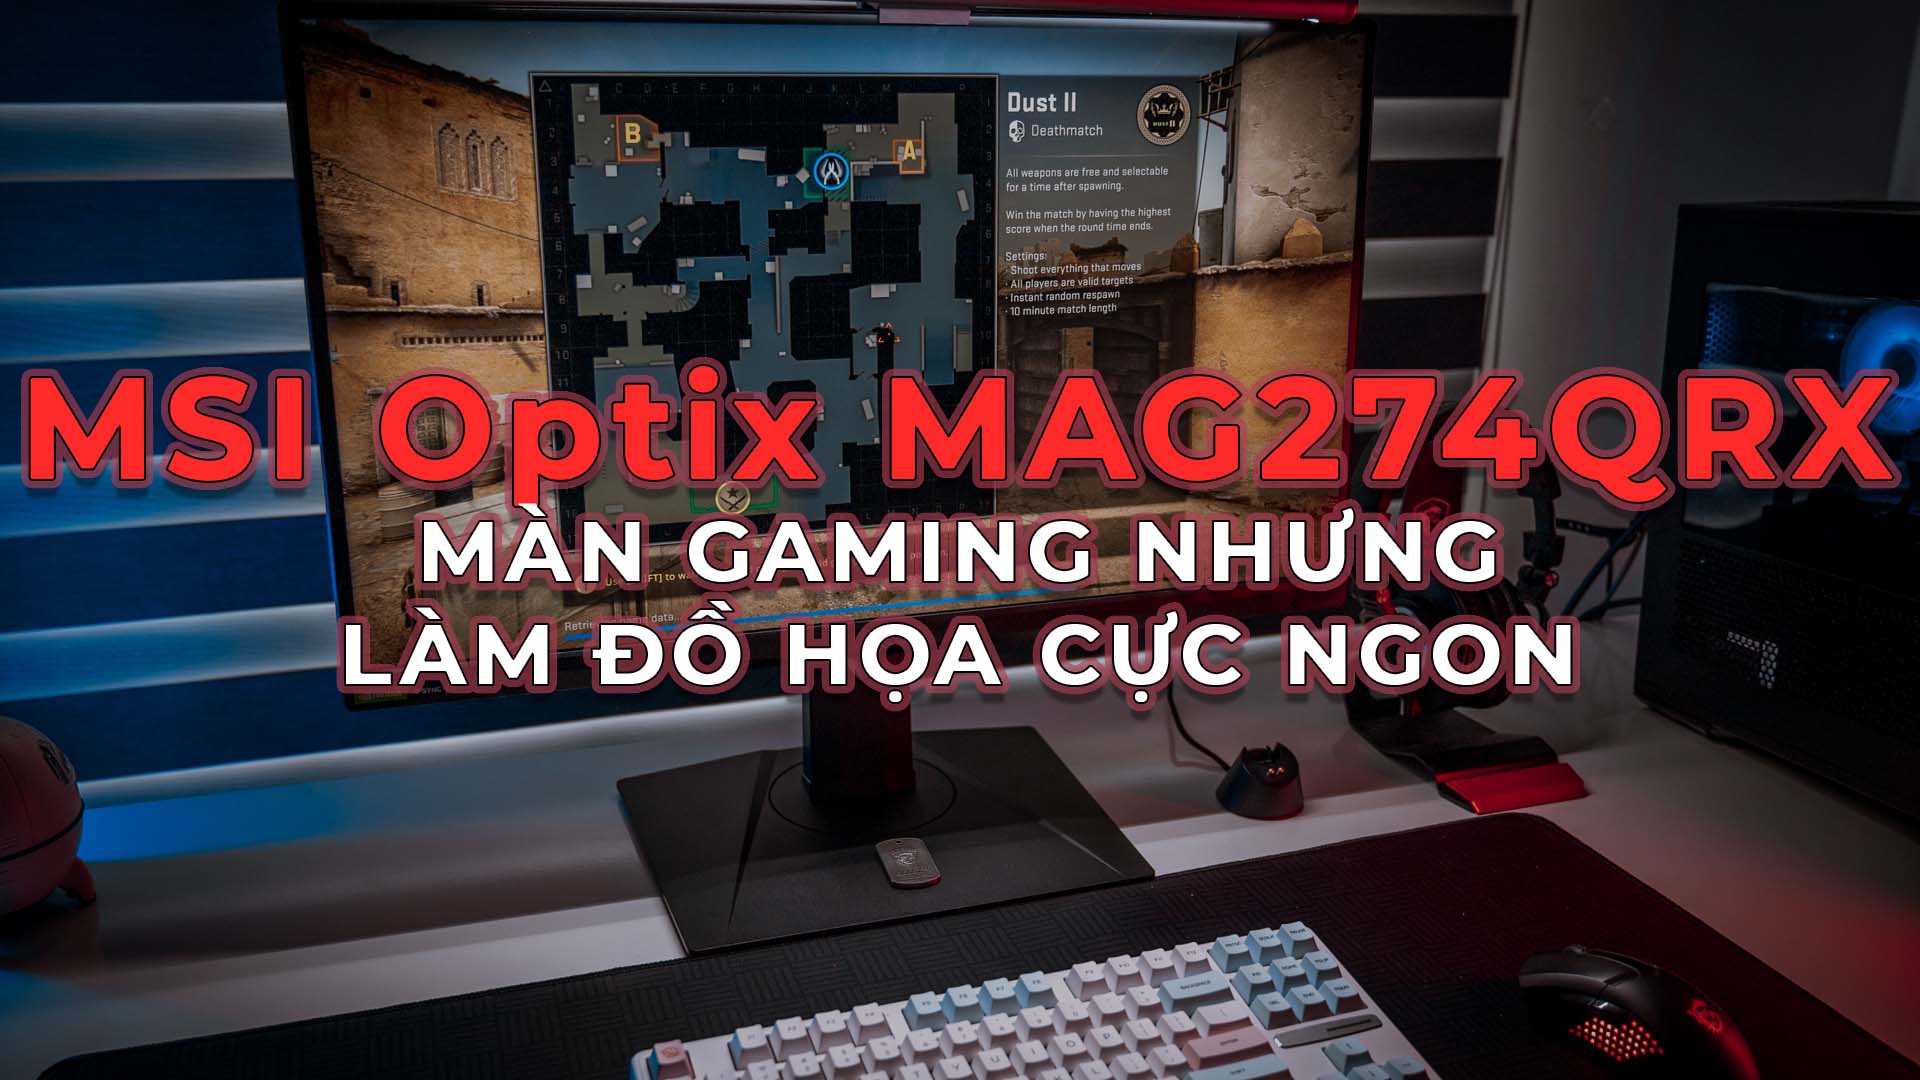 Màn Hình Gaming Làm Đồ Họa Cực Ngon - MSI Optix MAG274QRX